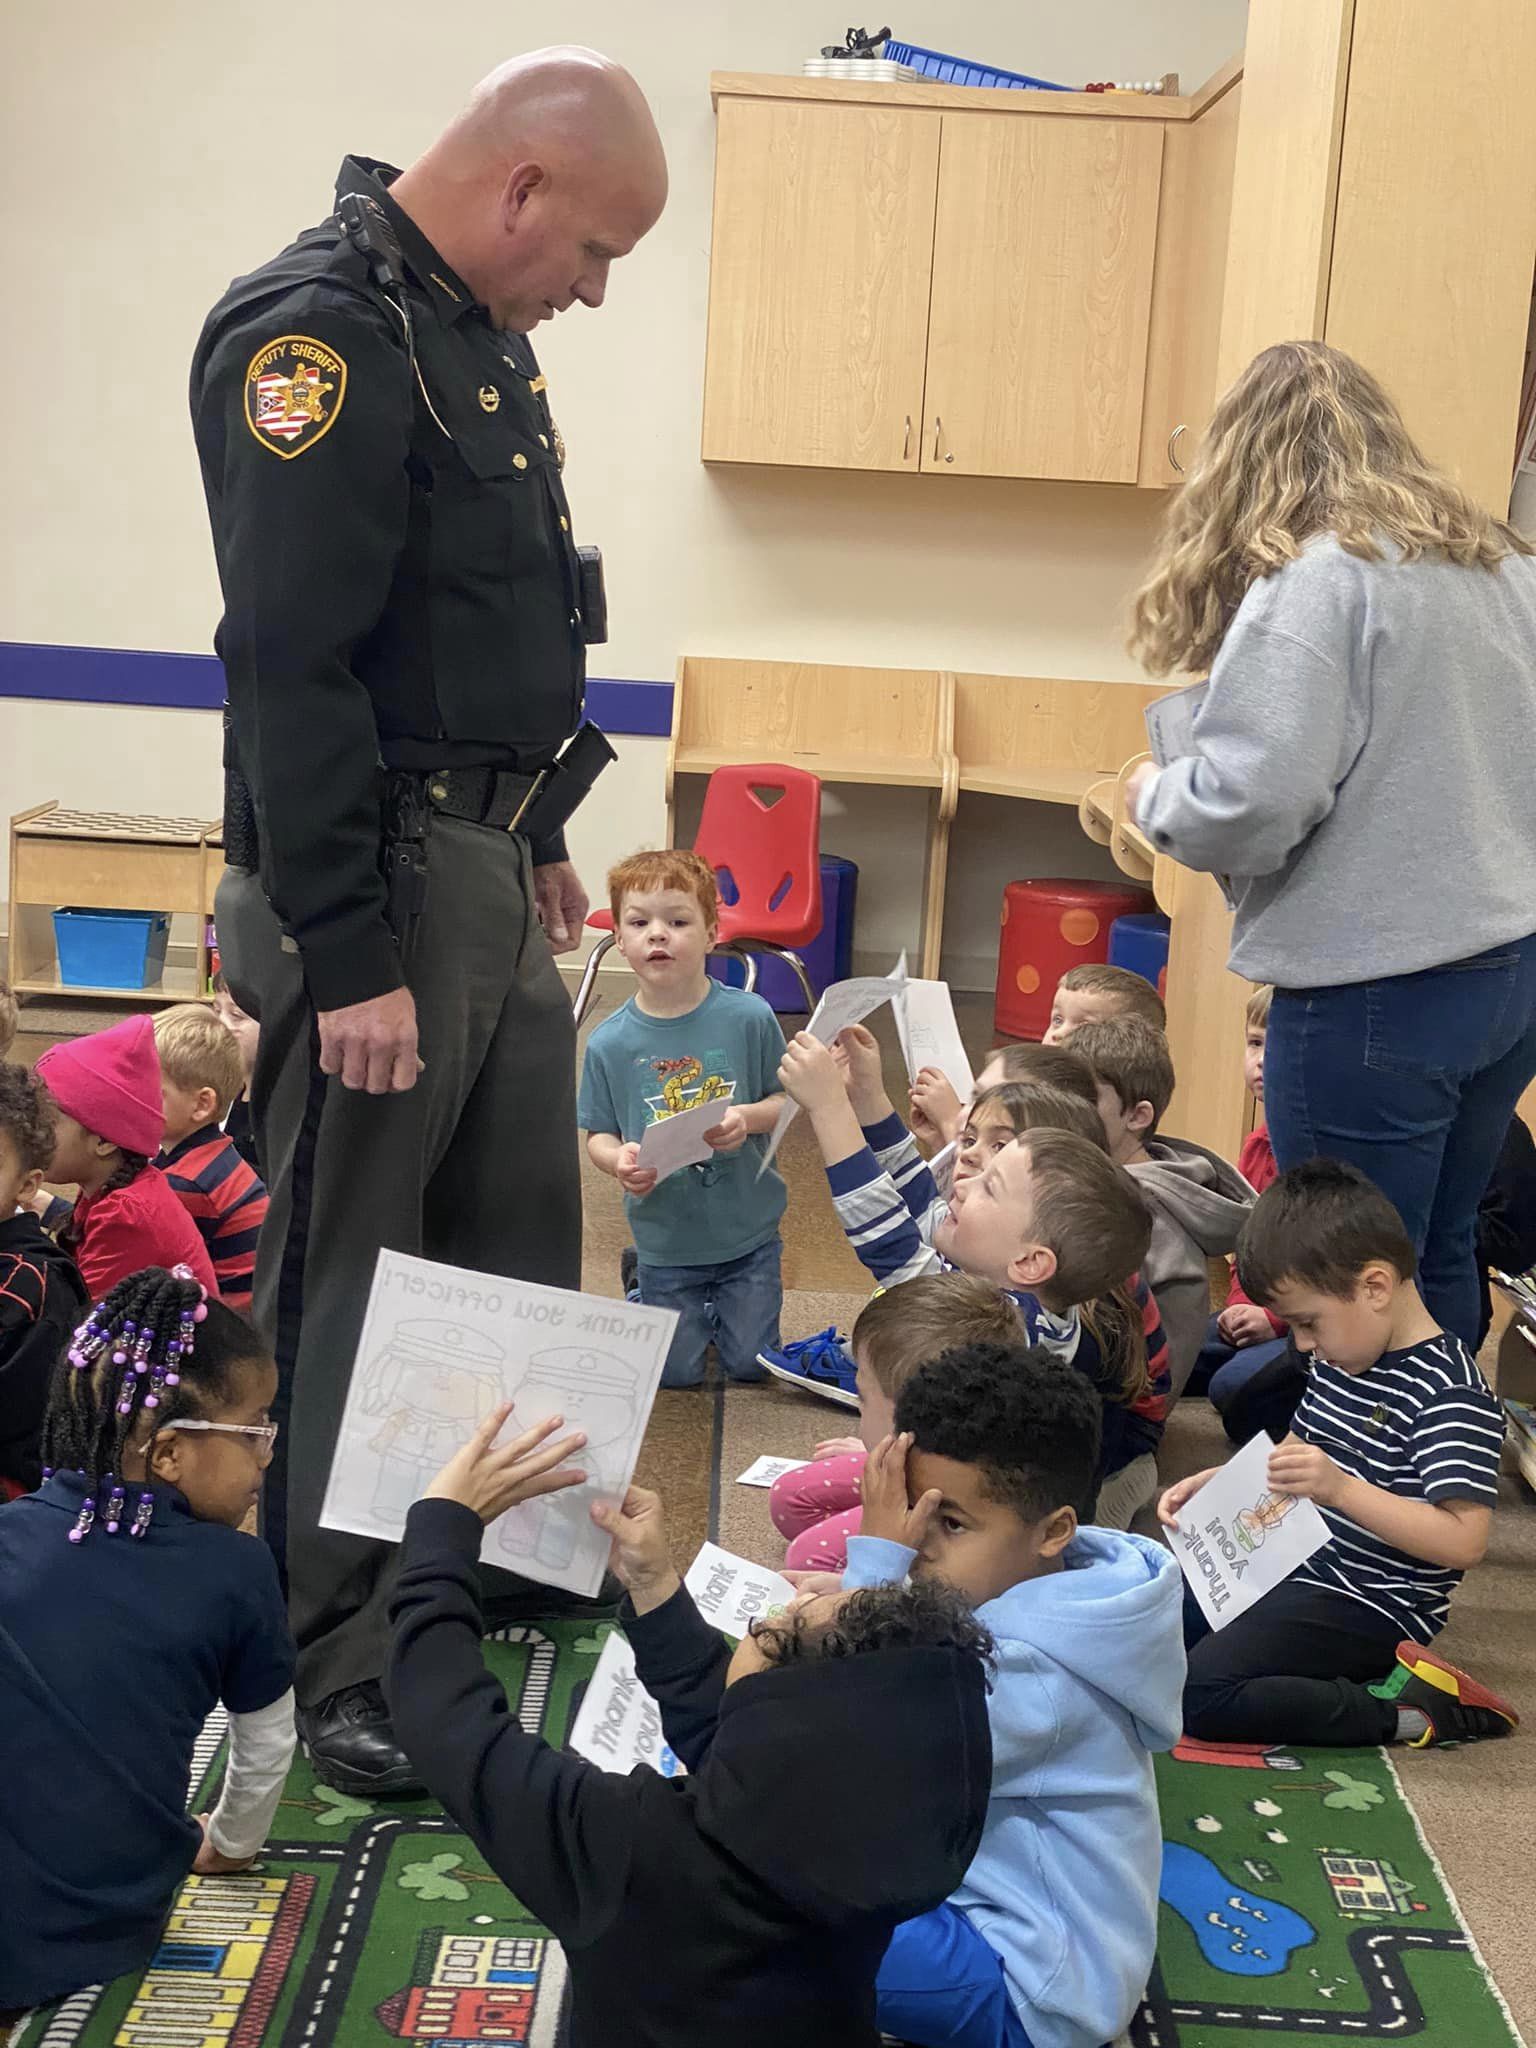 Sheriff's appreciation day through children's eyes